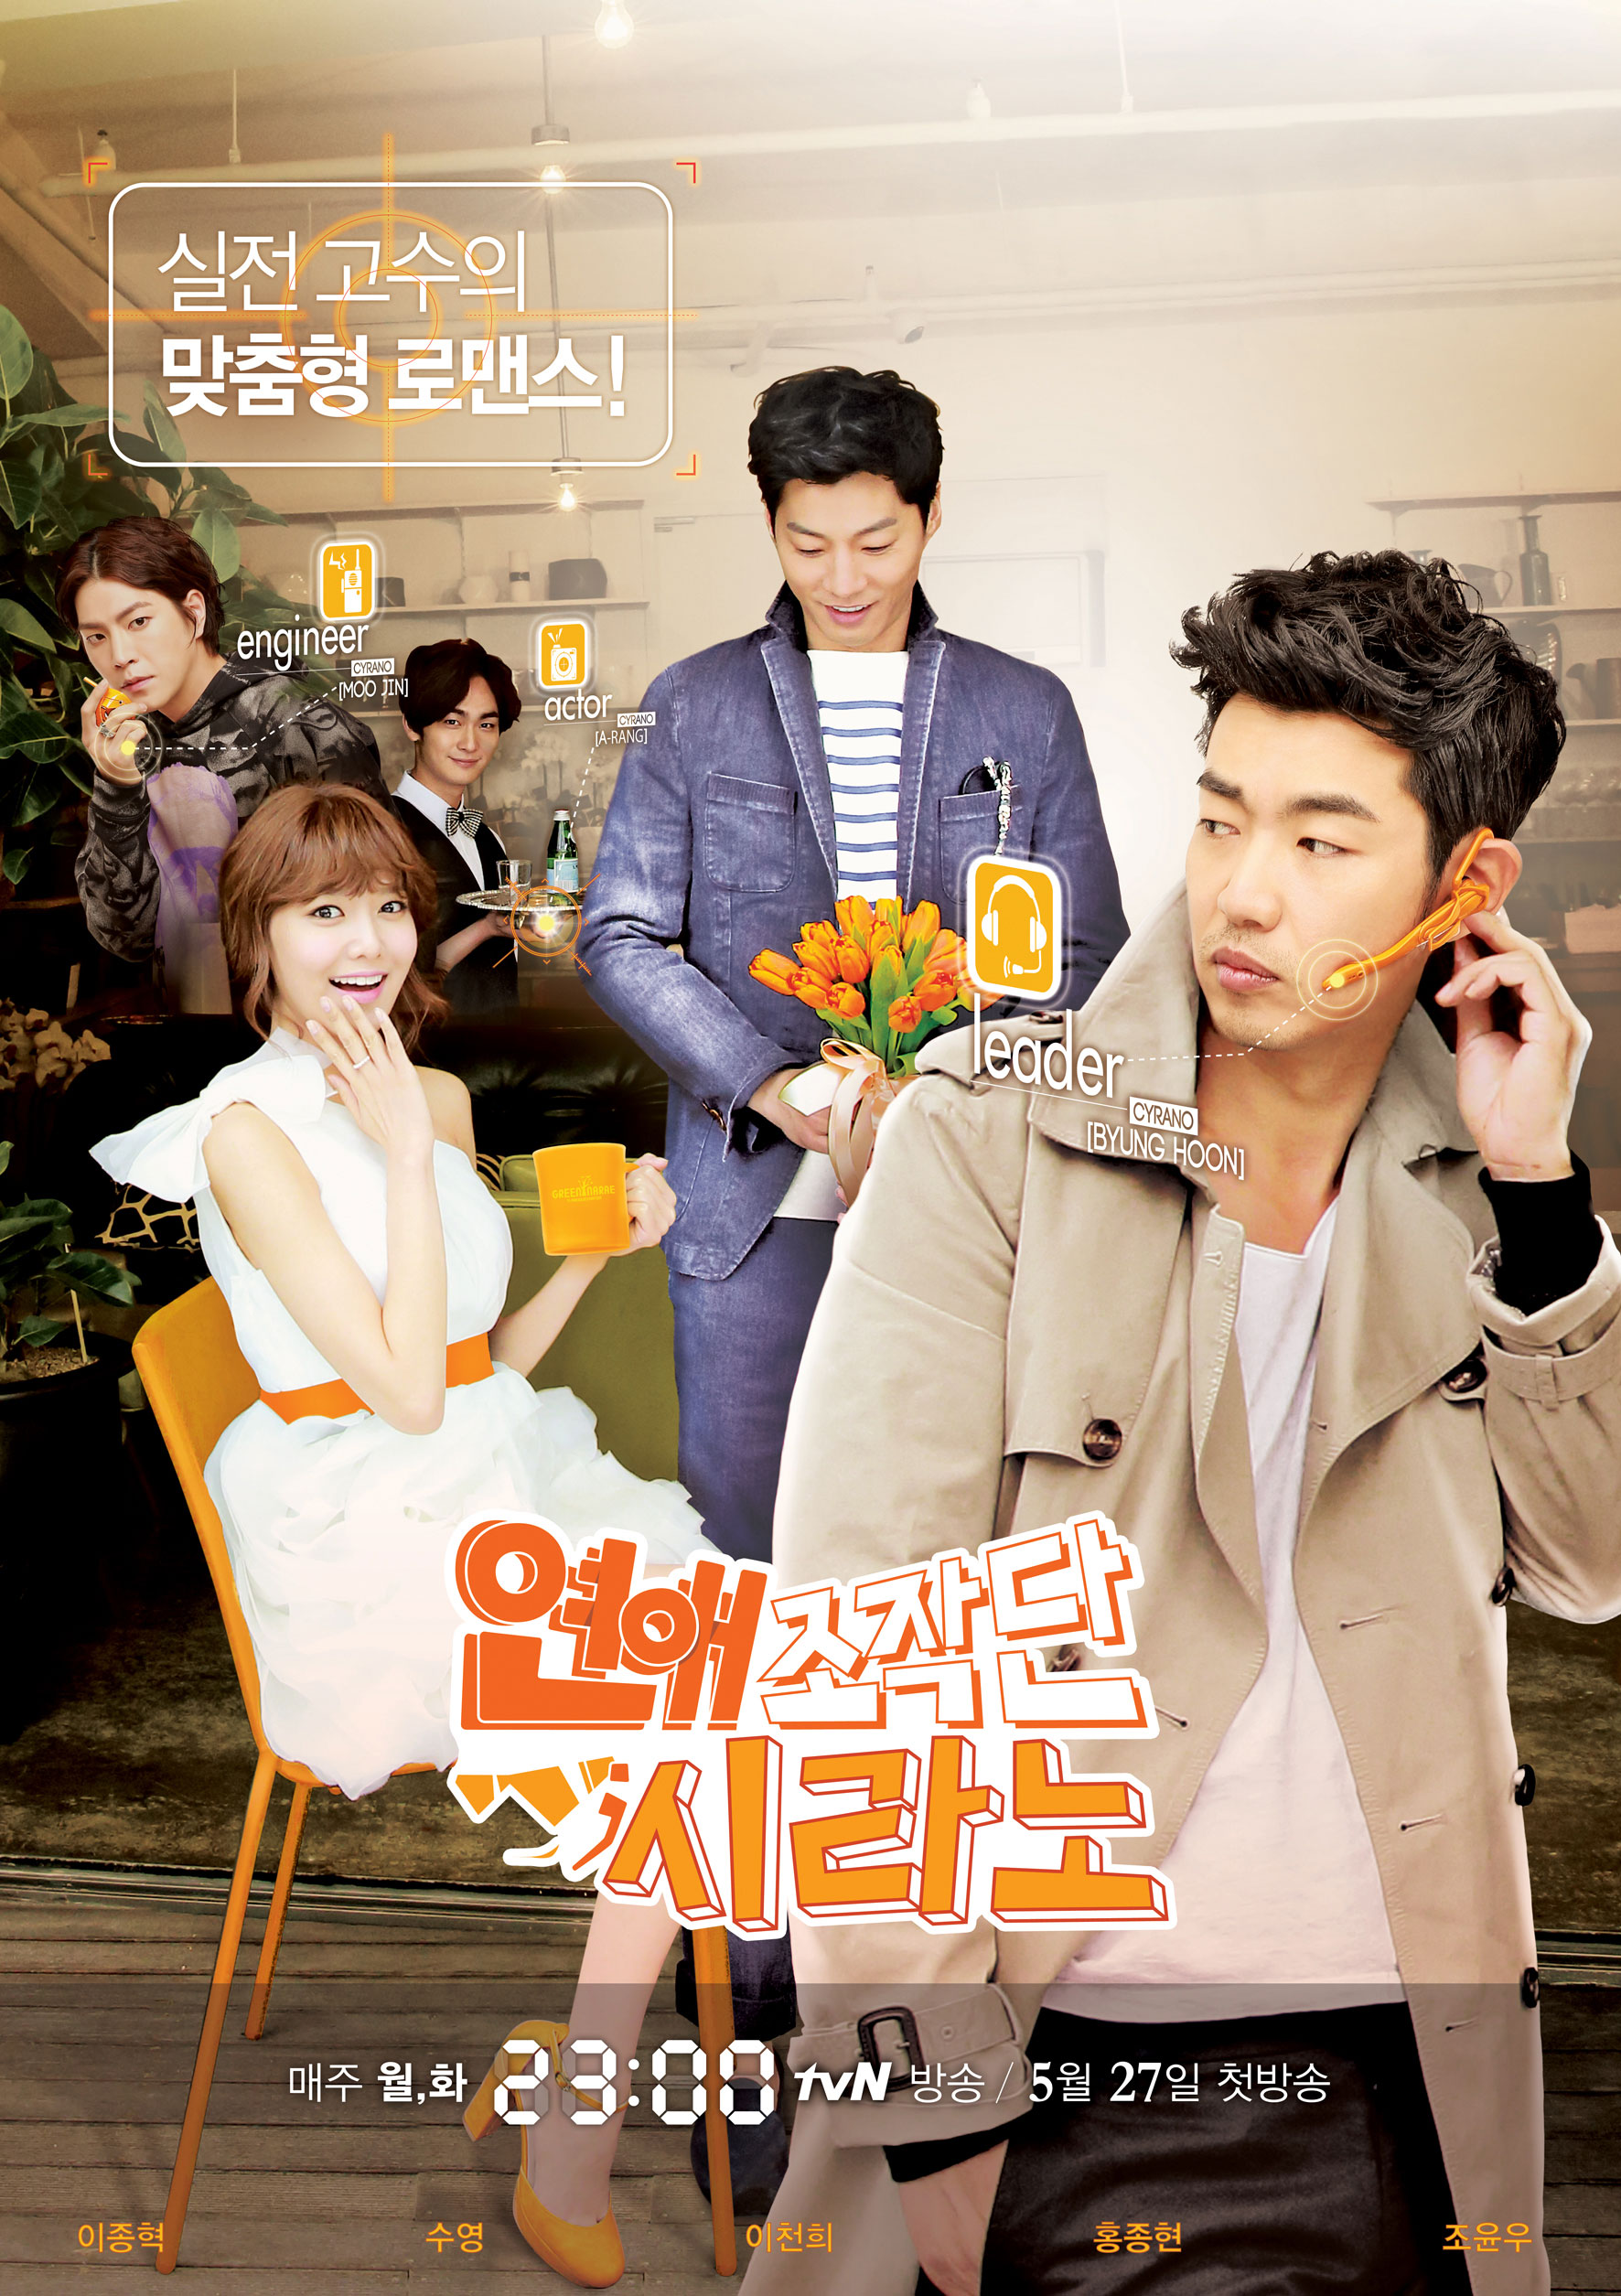 Sooyoung Cyrano Dating Agency drama poster